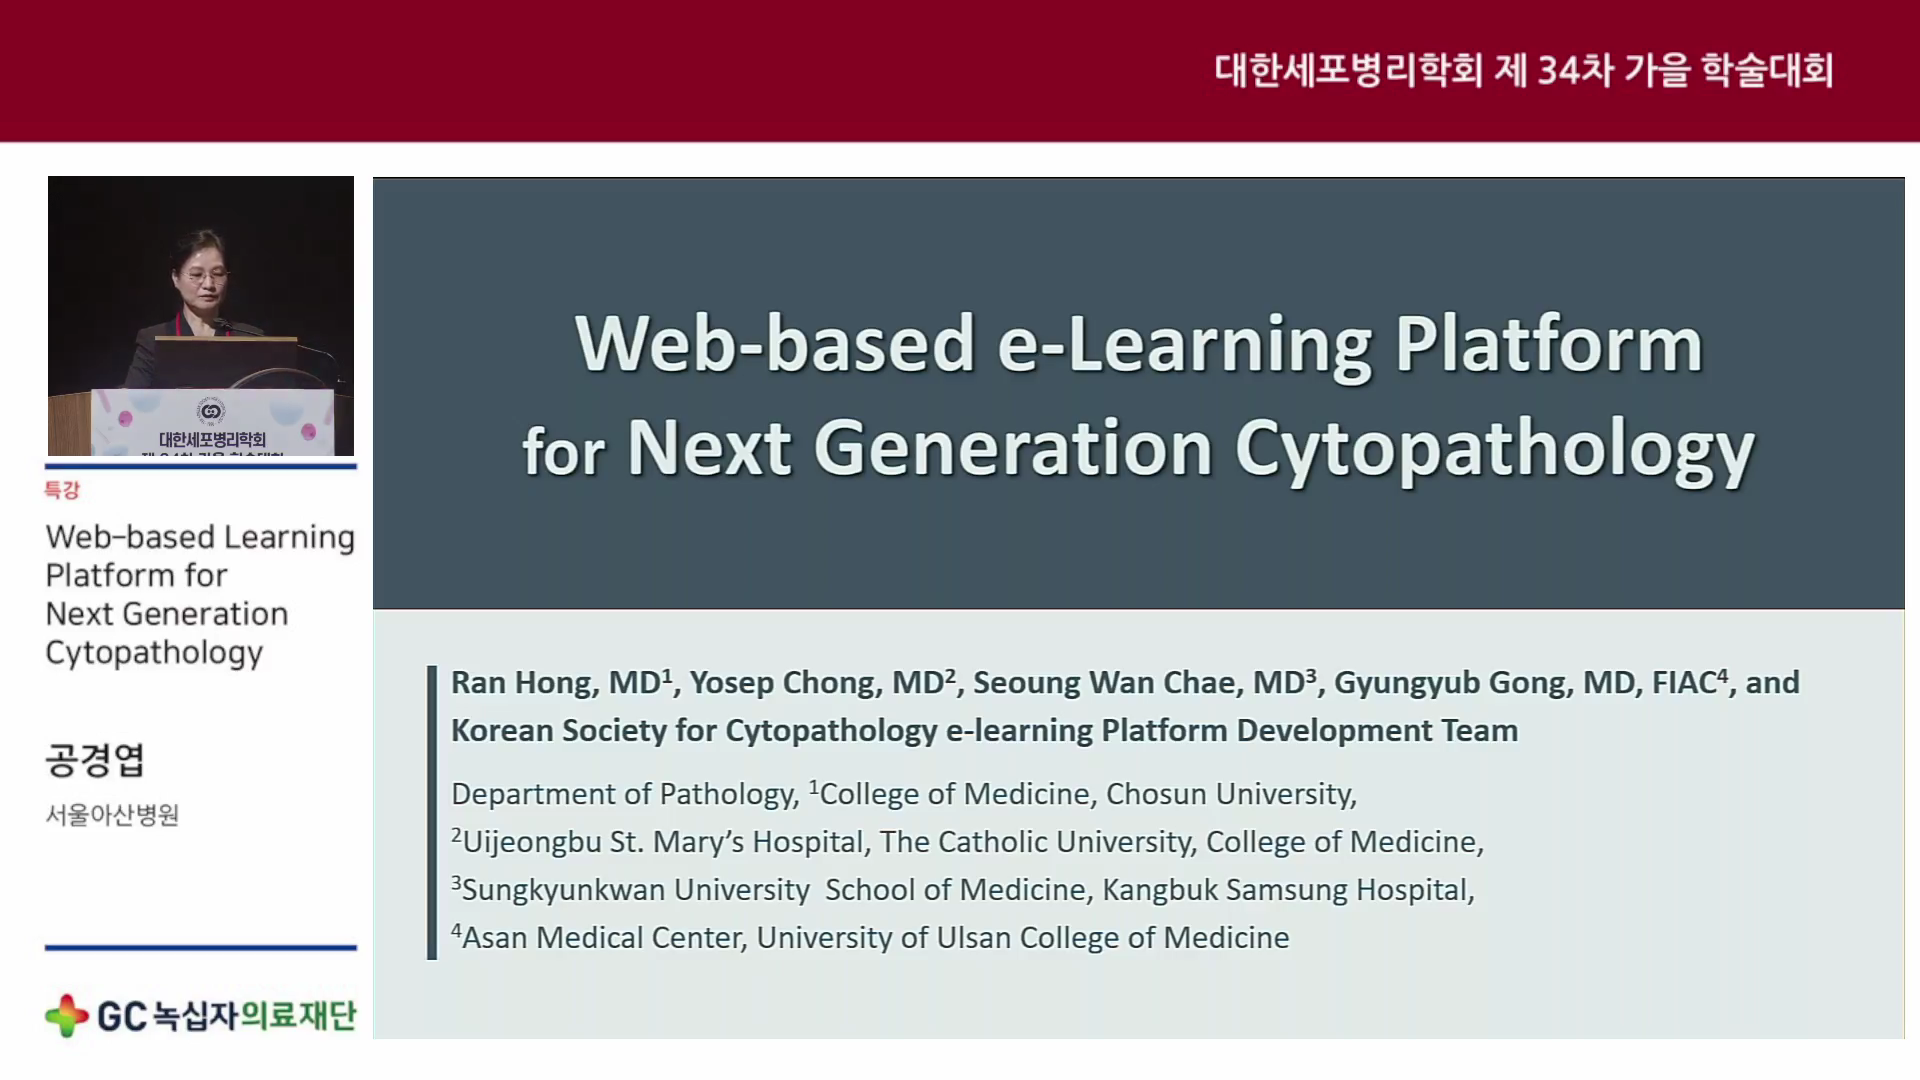 Web-based e-Learning Platform for Next Generation Cytopathology